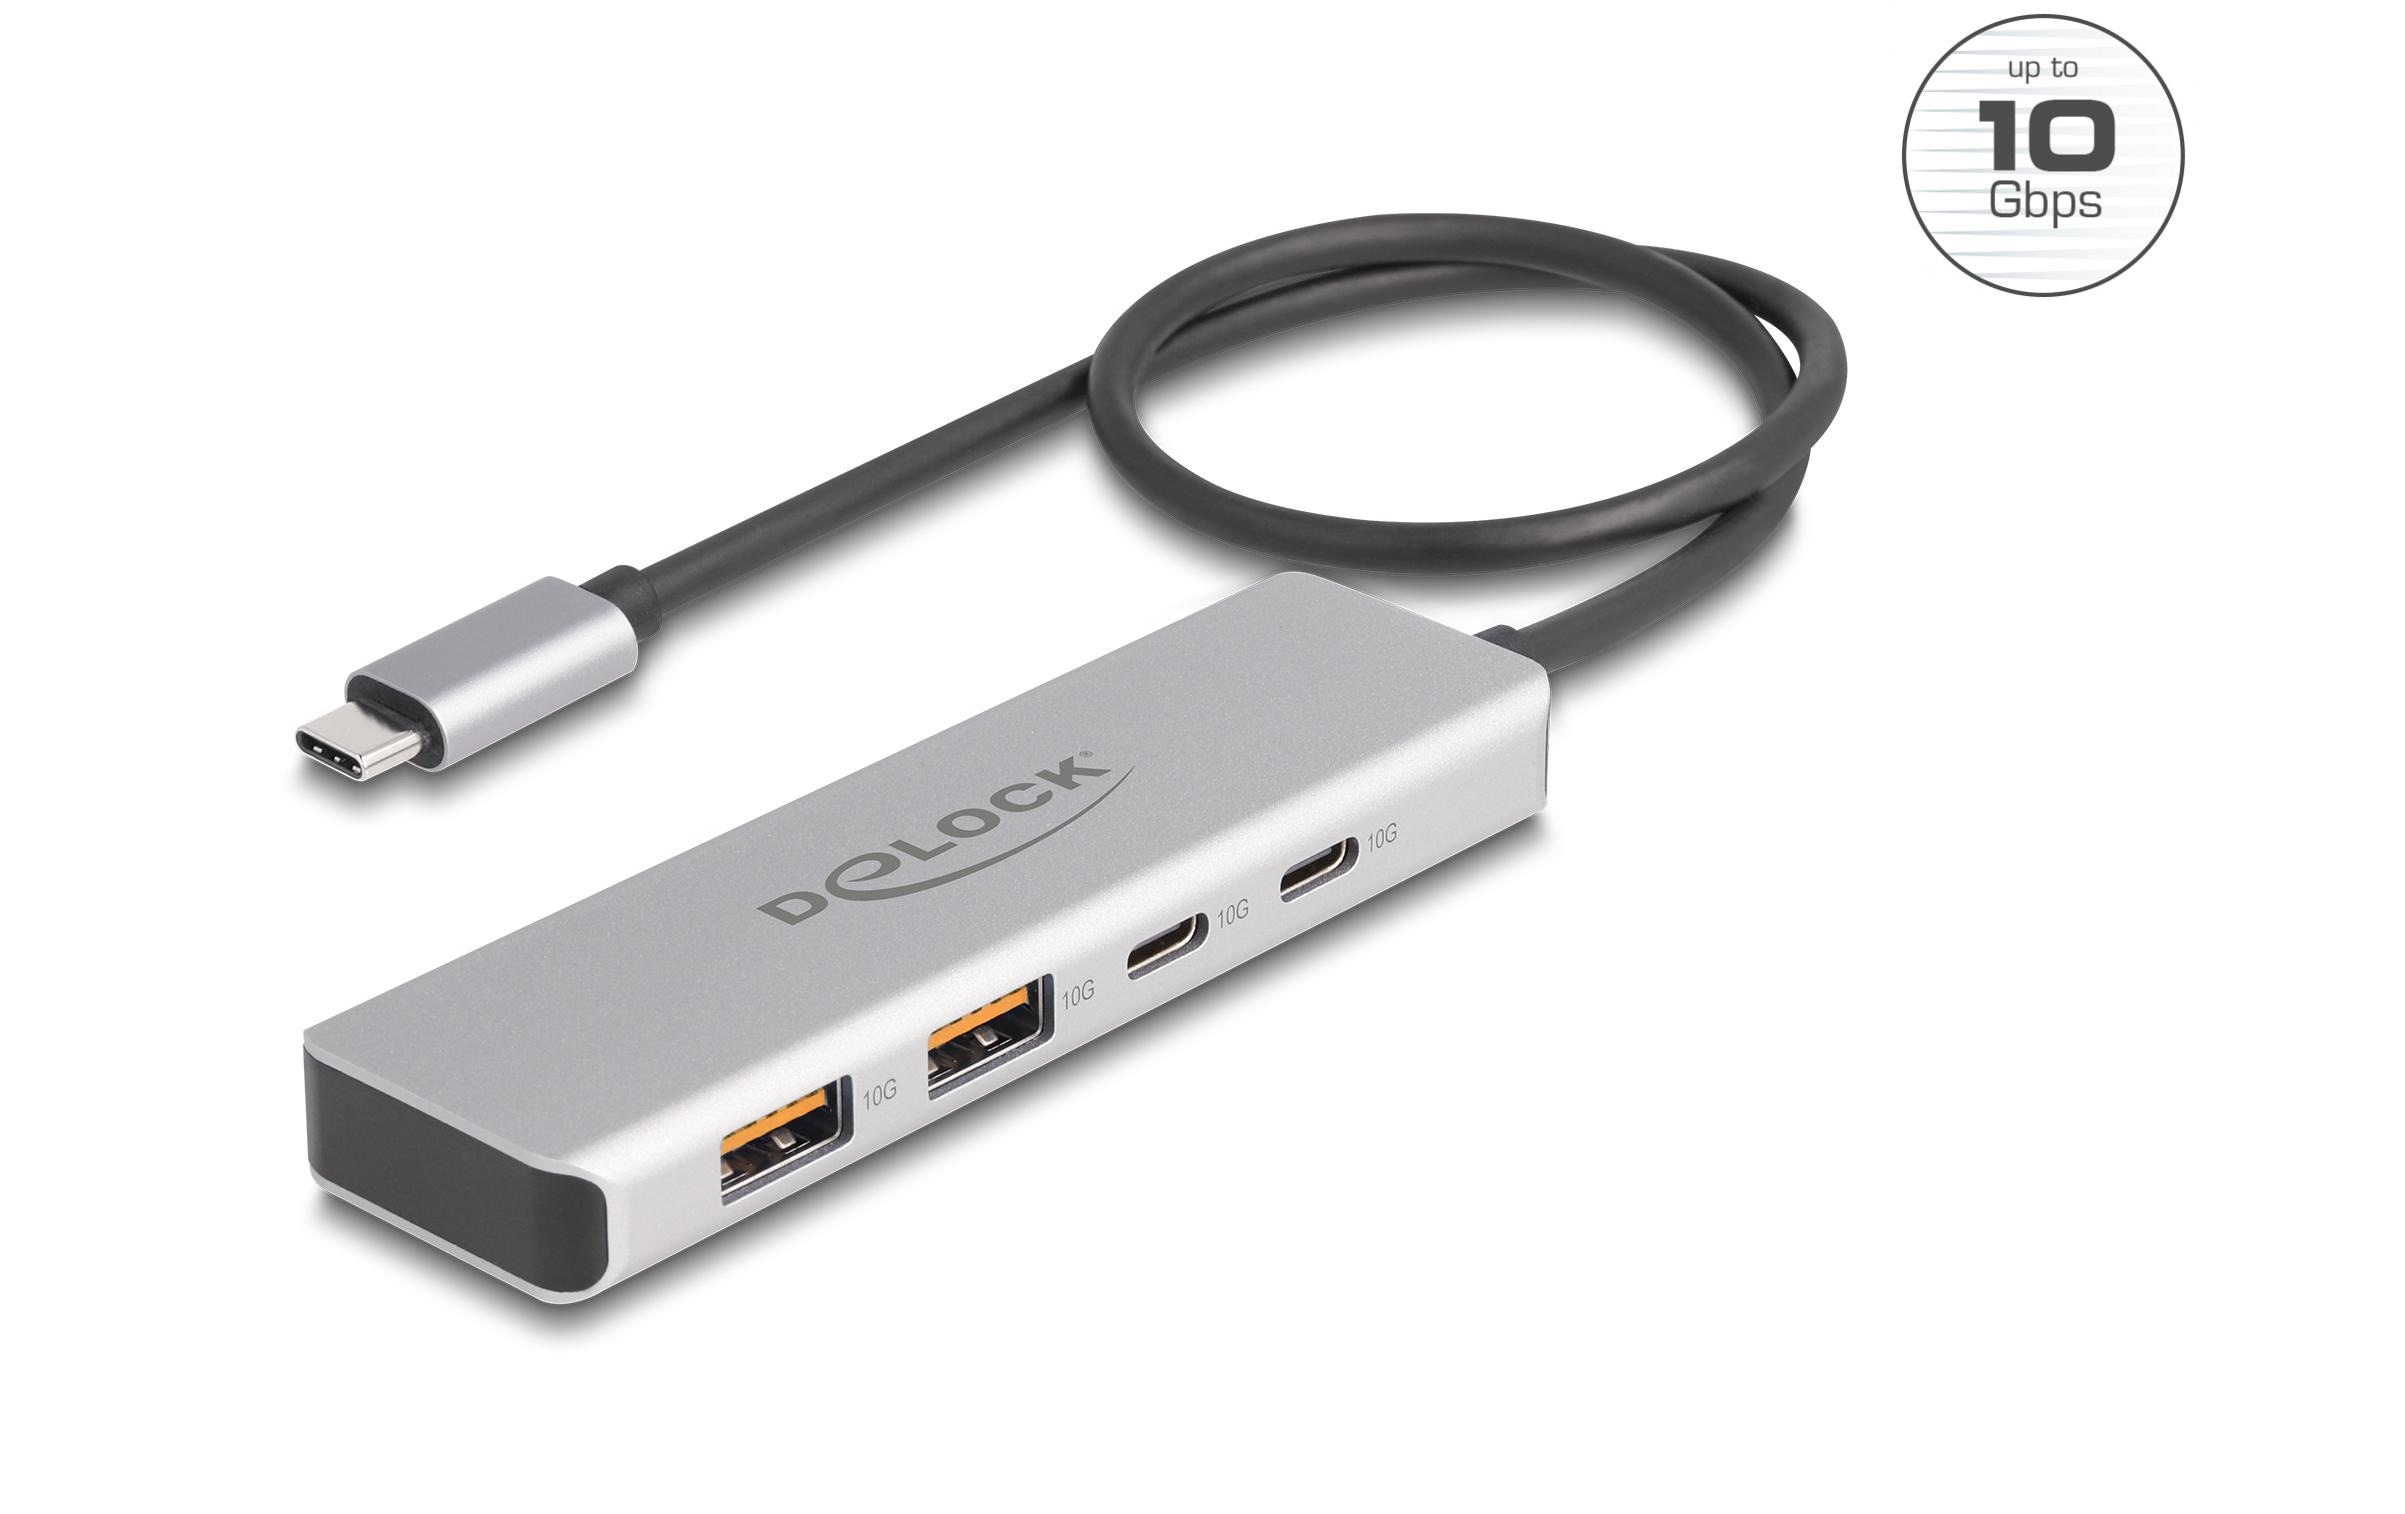 Delock USB-Hub 10 Gbps 2 x USB Typ-A und 2 x USB Type-C